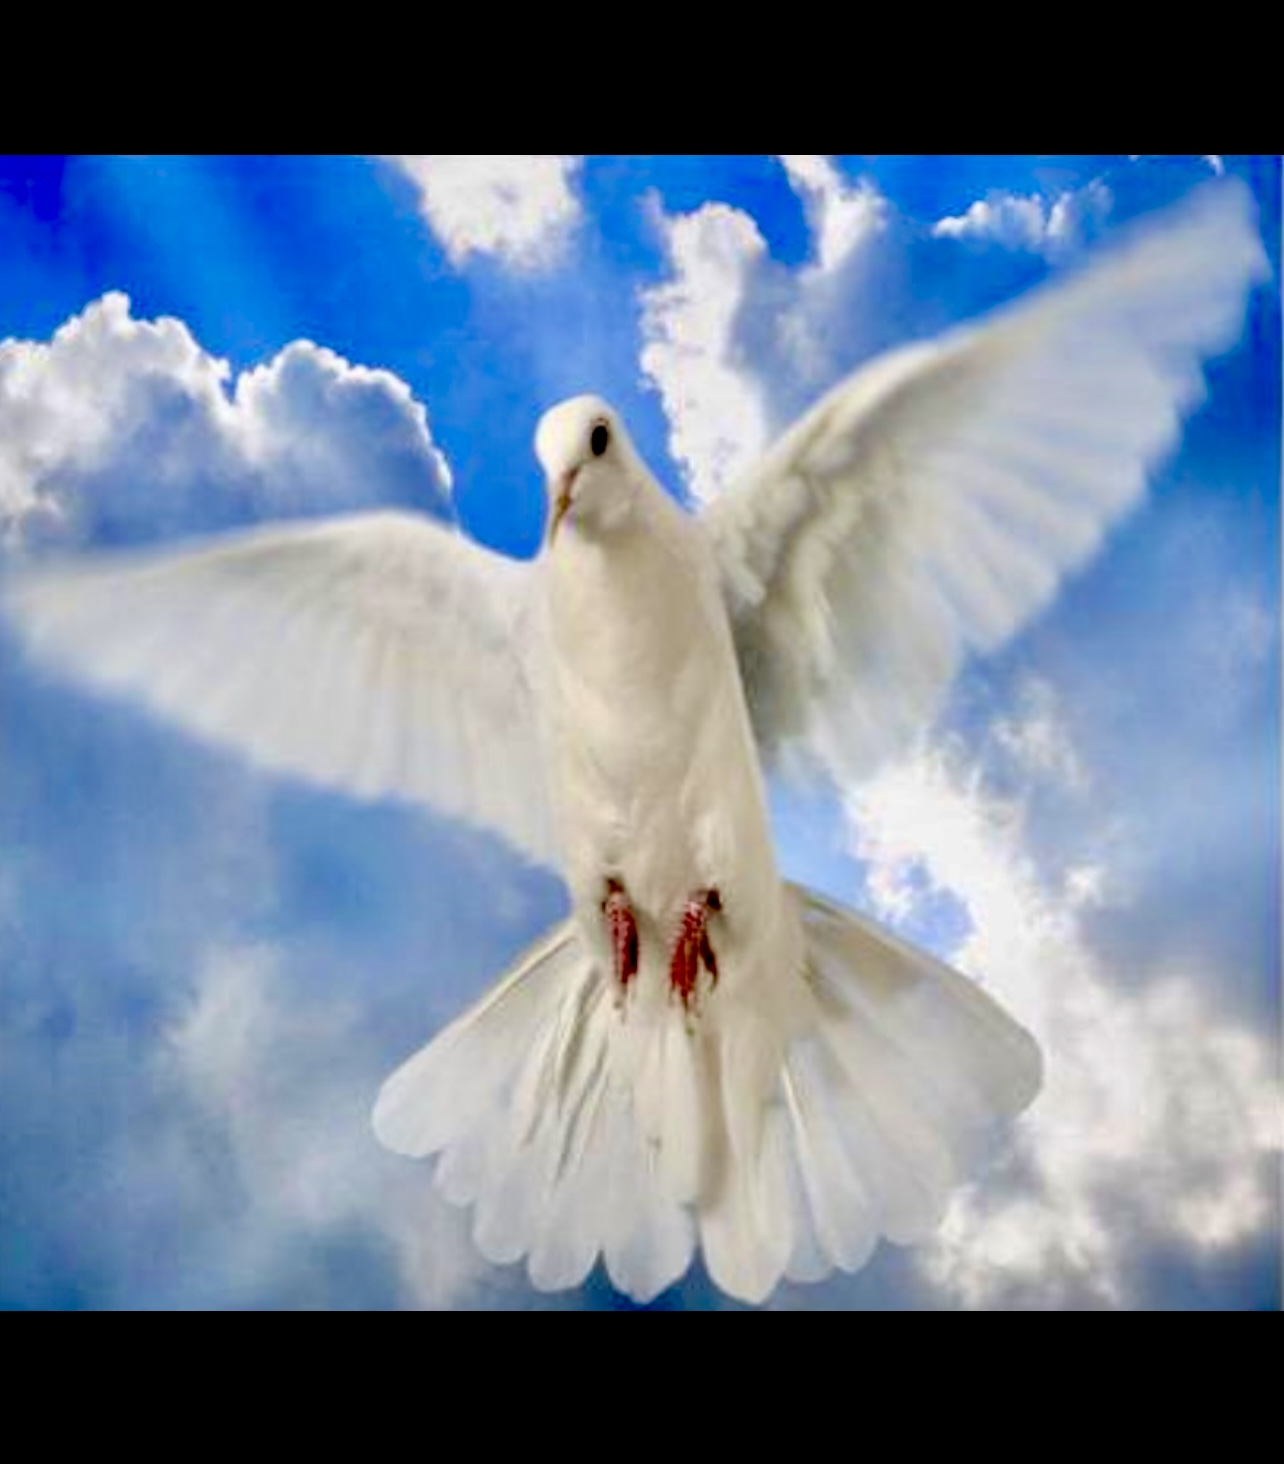 Une colombe blanche spirituelle s’élève gracieusement dans le ciel au milieu de nuages duveteux.